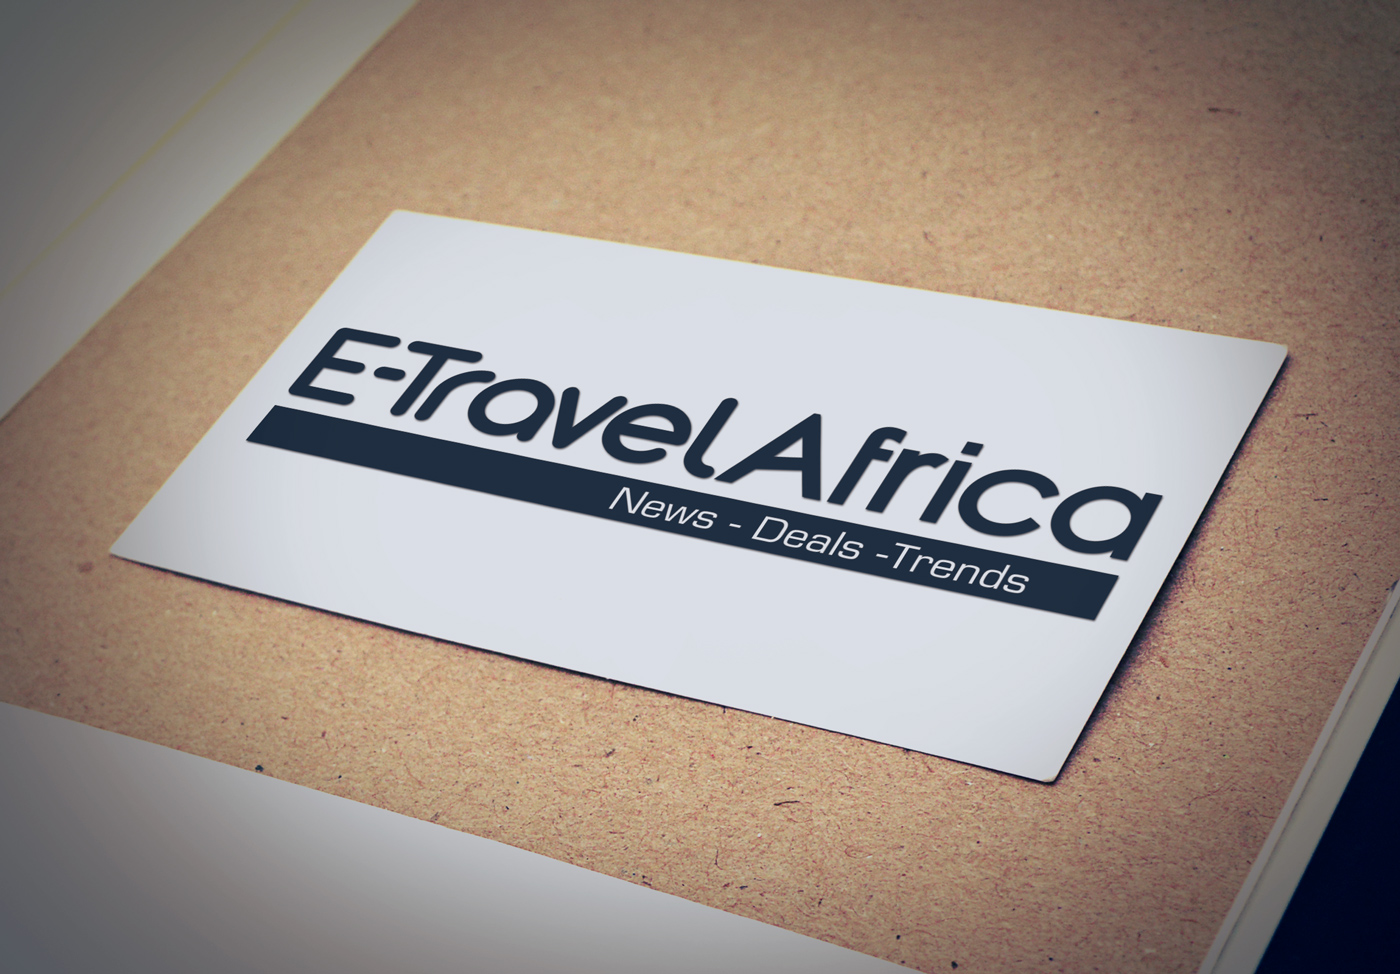 Carte de visite etravelafrica agence voyage